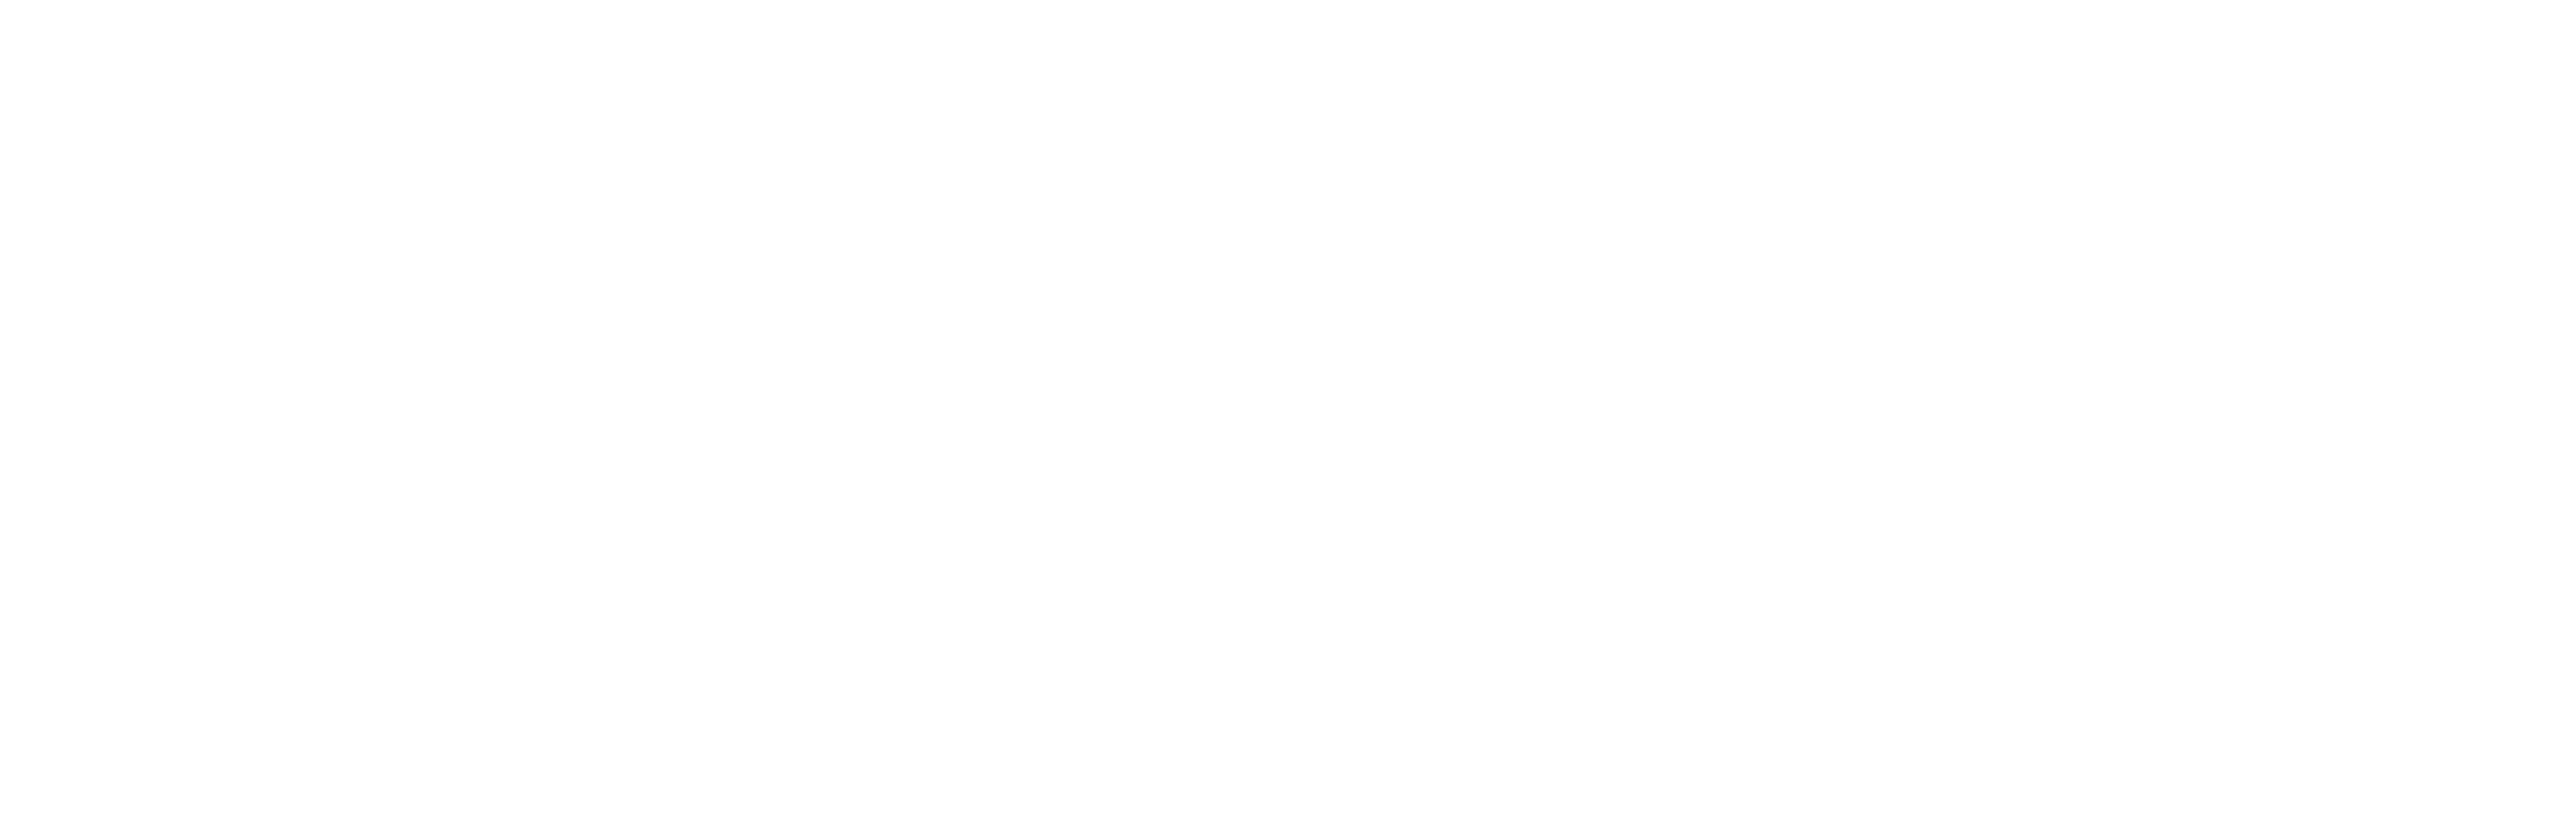 IIFBC Logo - Asset 26@2x2